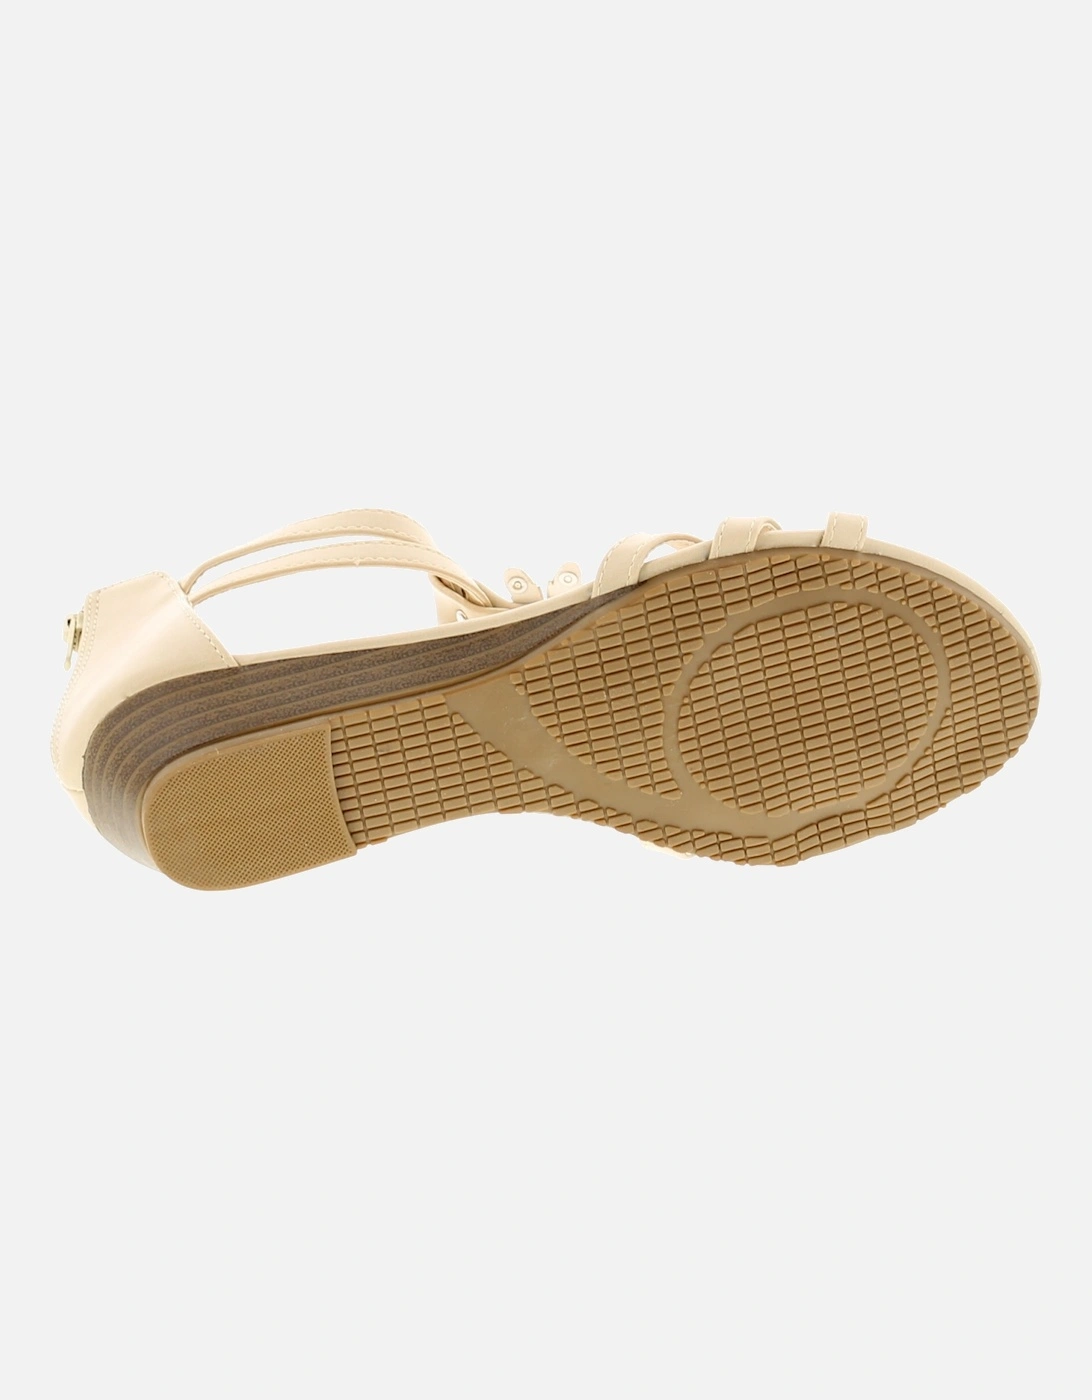 Womens Wedge Sandals Floella Zip beige UK Size